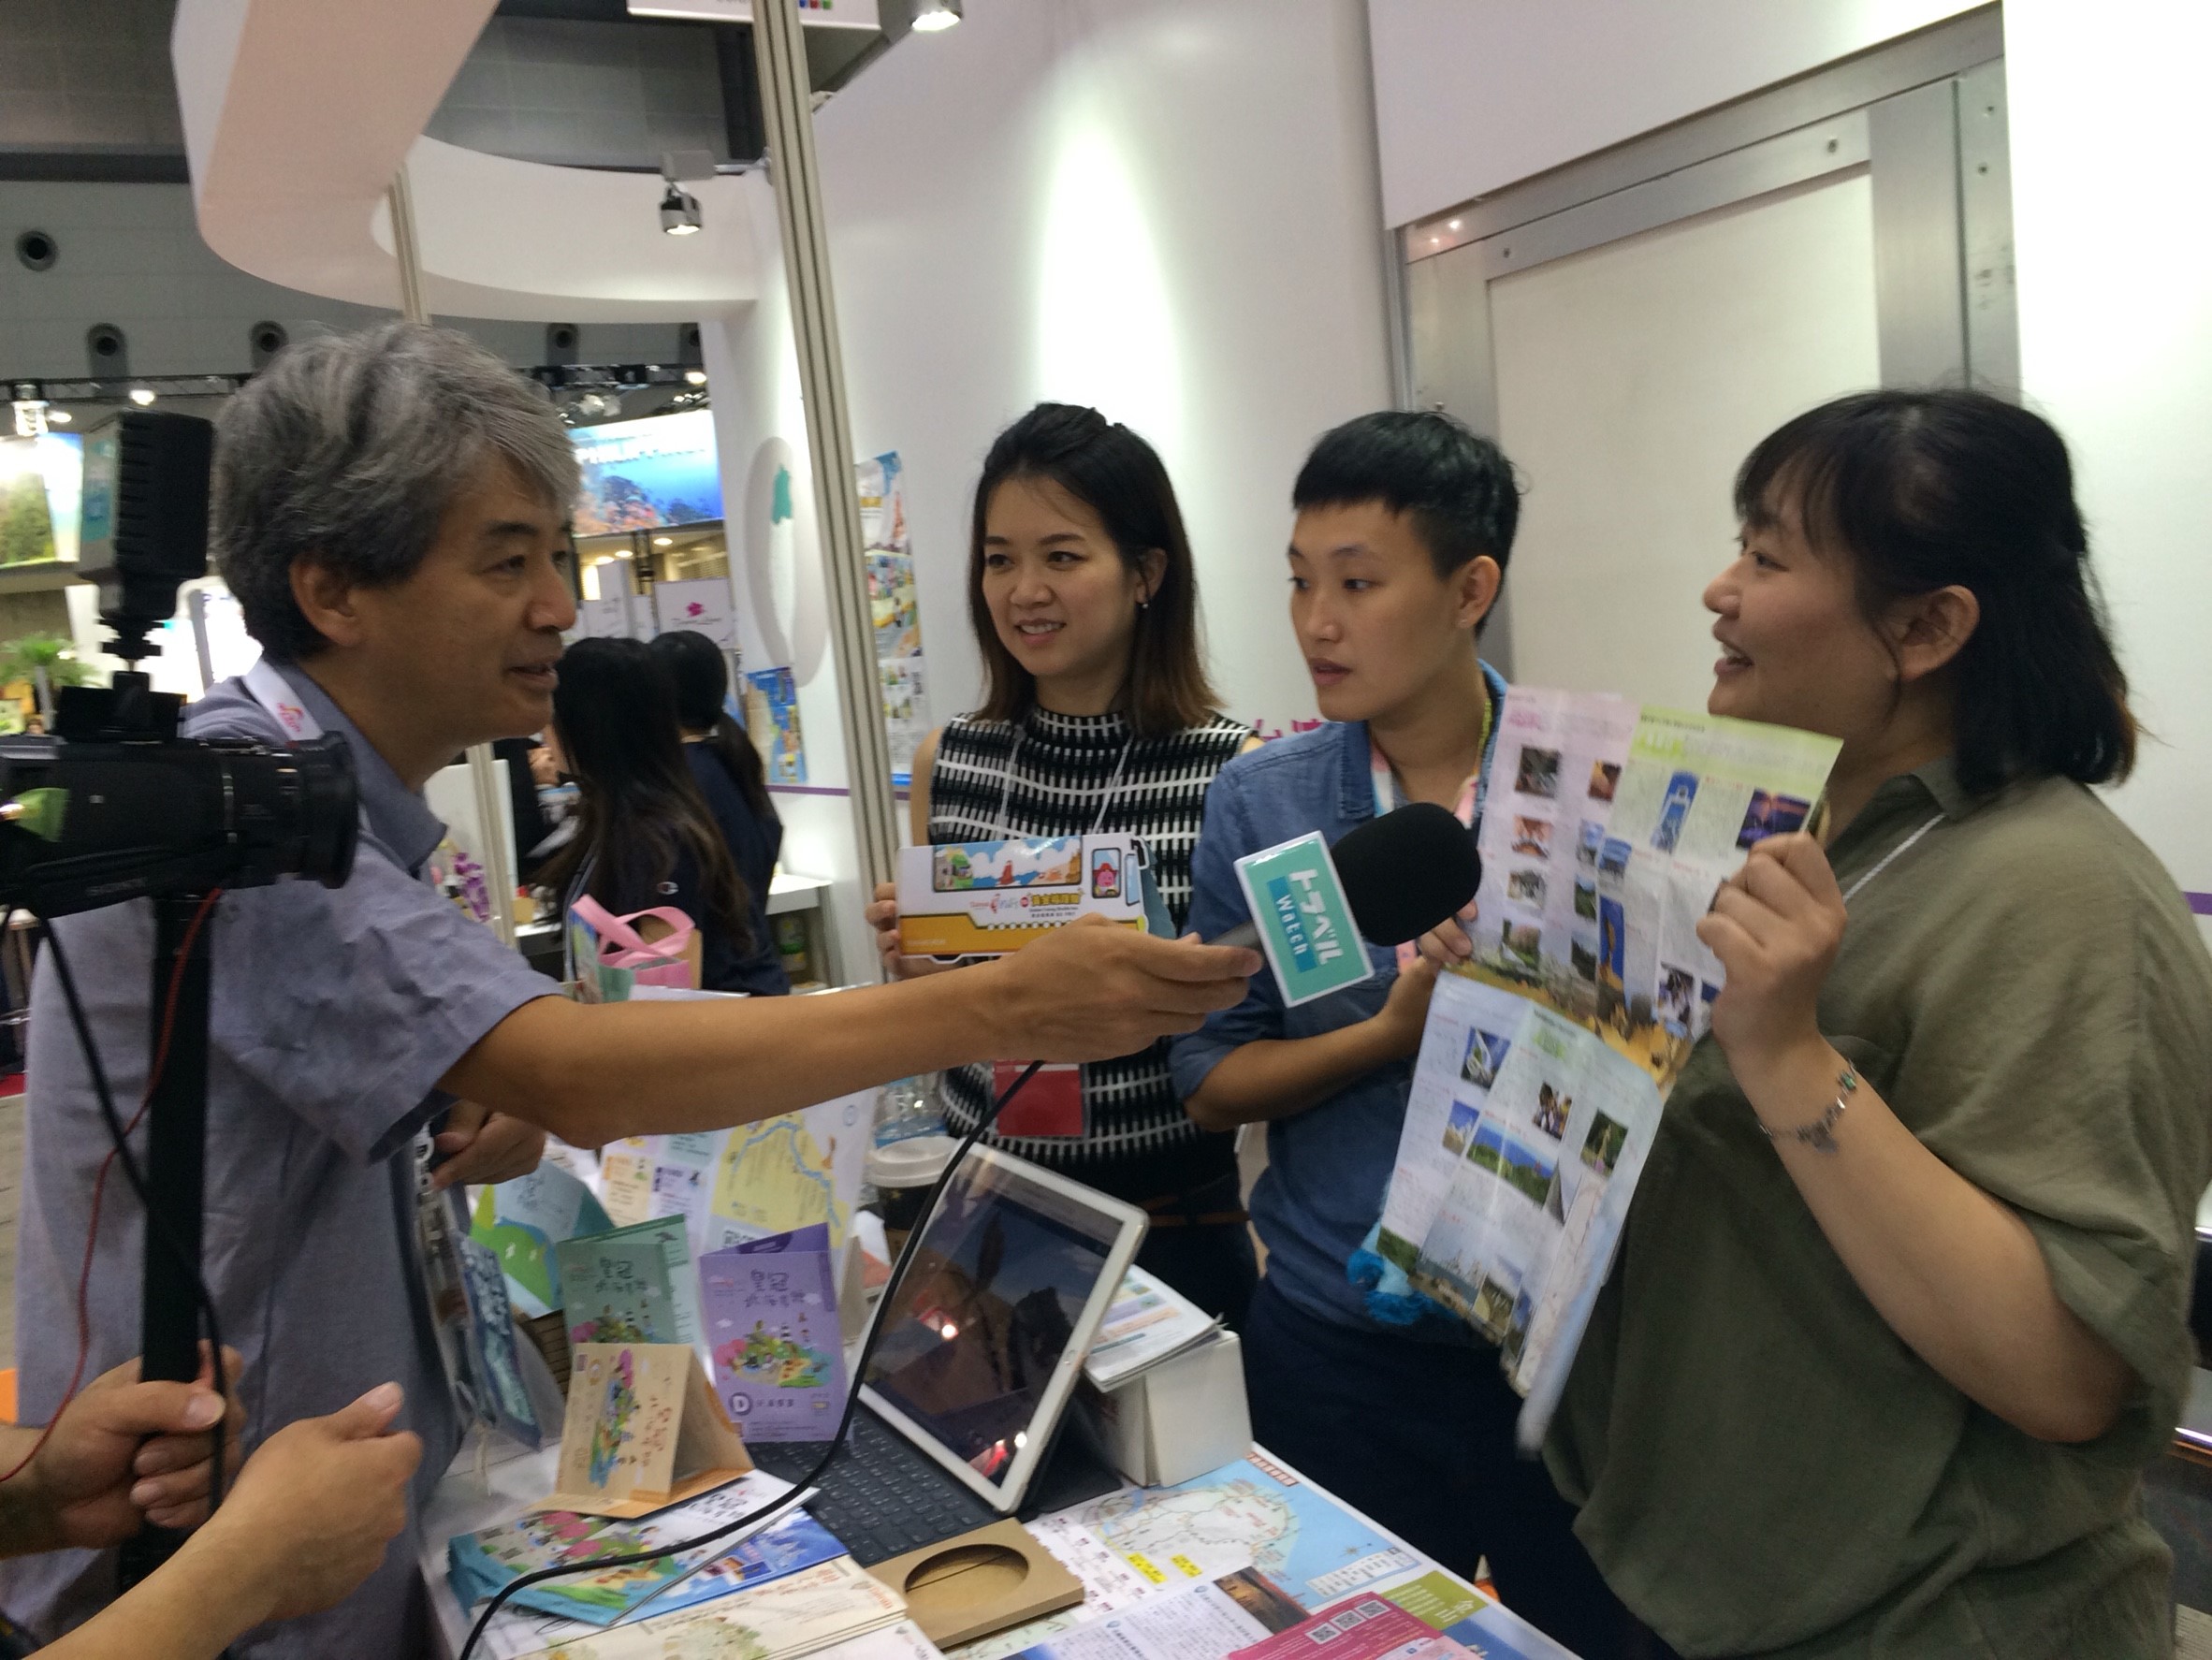 日本トラベル watch 綜合旅遊資訊網站到北觀處台灣好行攤位進行直播採訪